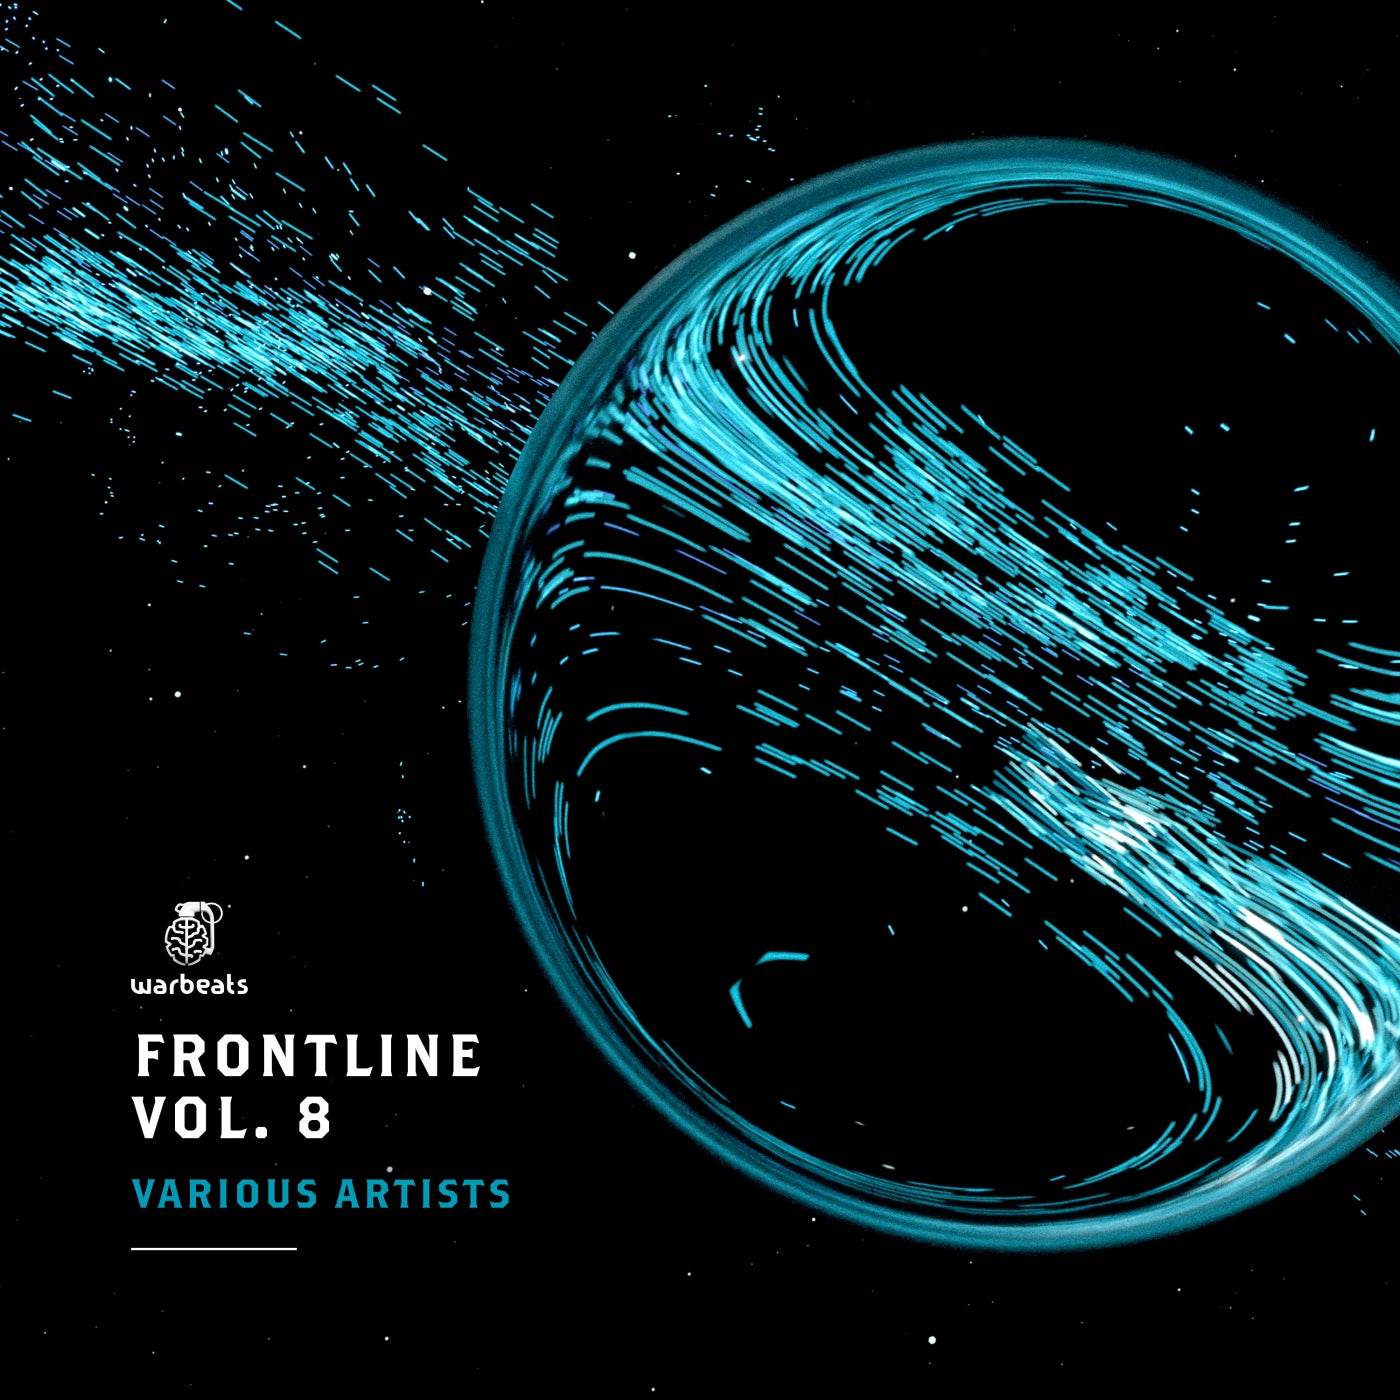 Frontline, Vol. 8